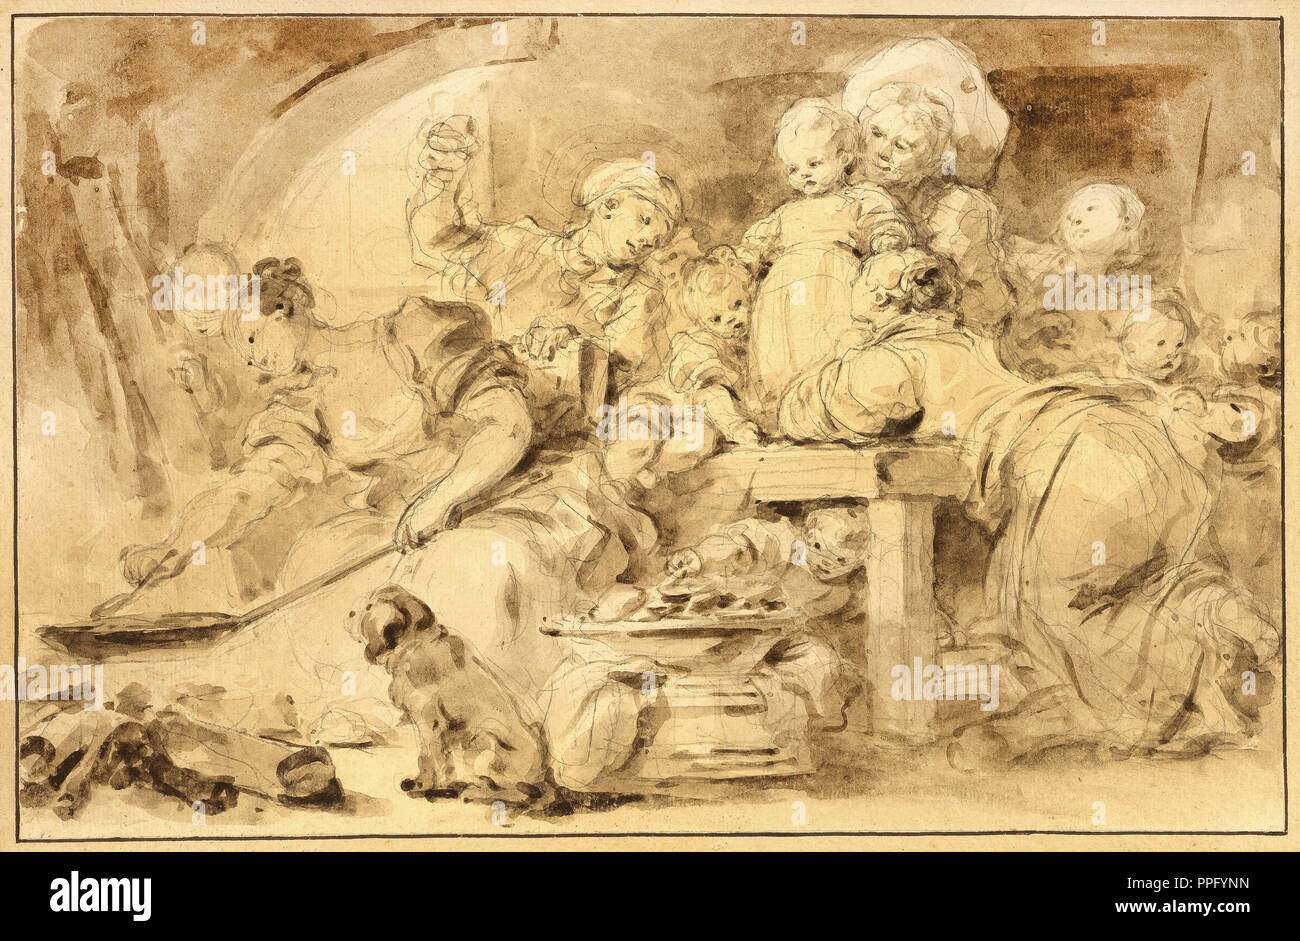 Jean-Honore Fragonard, die Pfannkuchen maker. Circa 1782. Pinsel und brauner Tinte über Graphit. Getty Center, Los Angeles, USA. Stockfoto